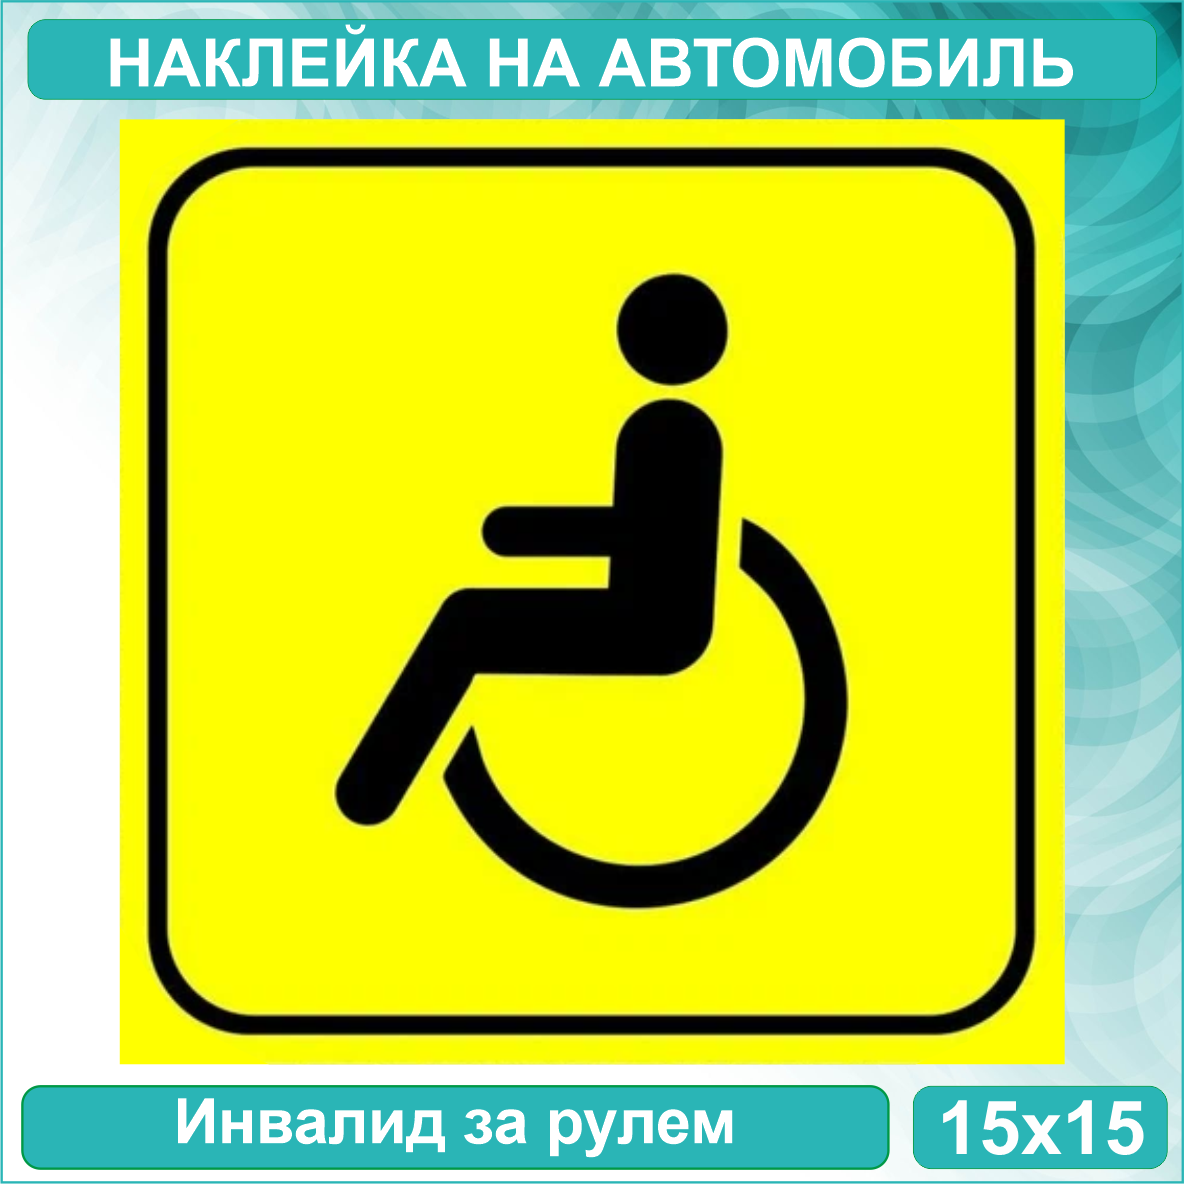 Наклейка на авто "Инвалид за рулем" (15х15см)